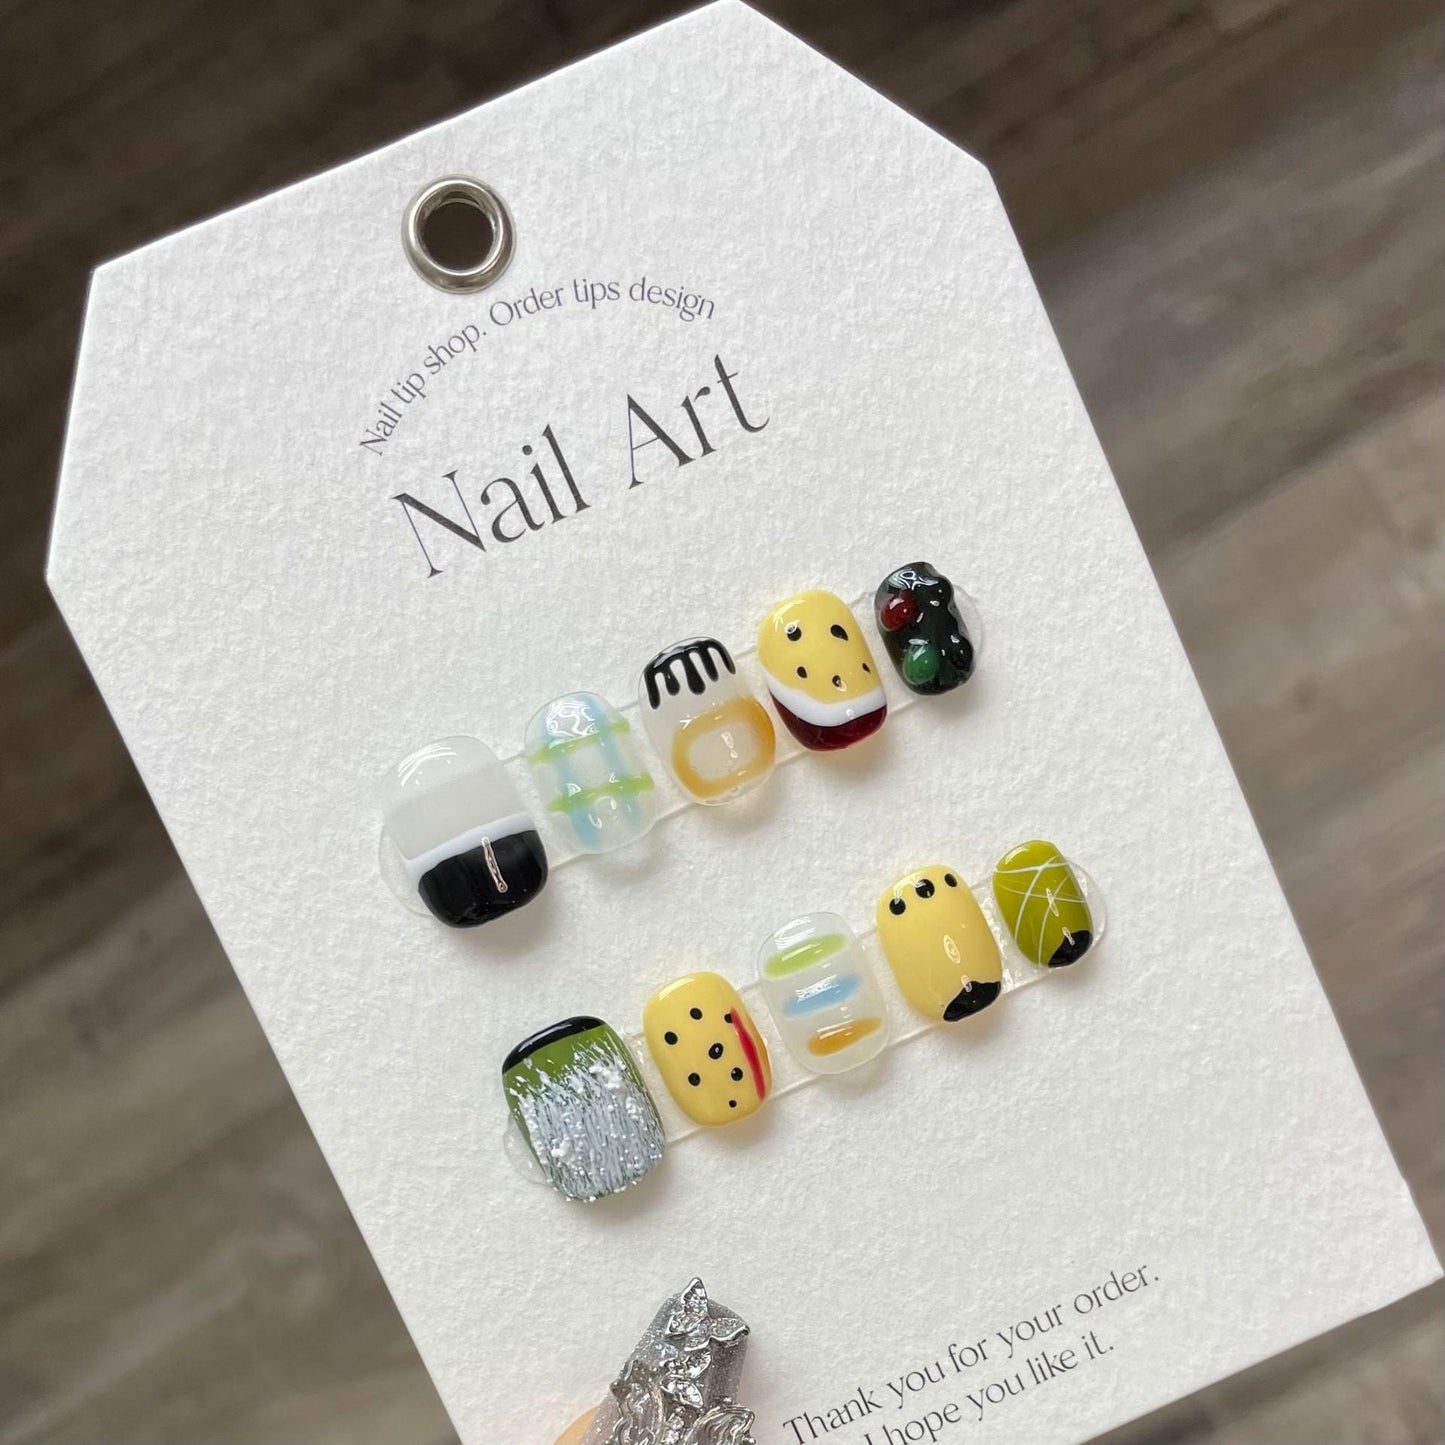 907 Cute Graffiti style press on nails 100% handmade false nails mixed color